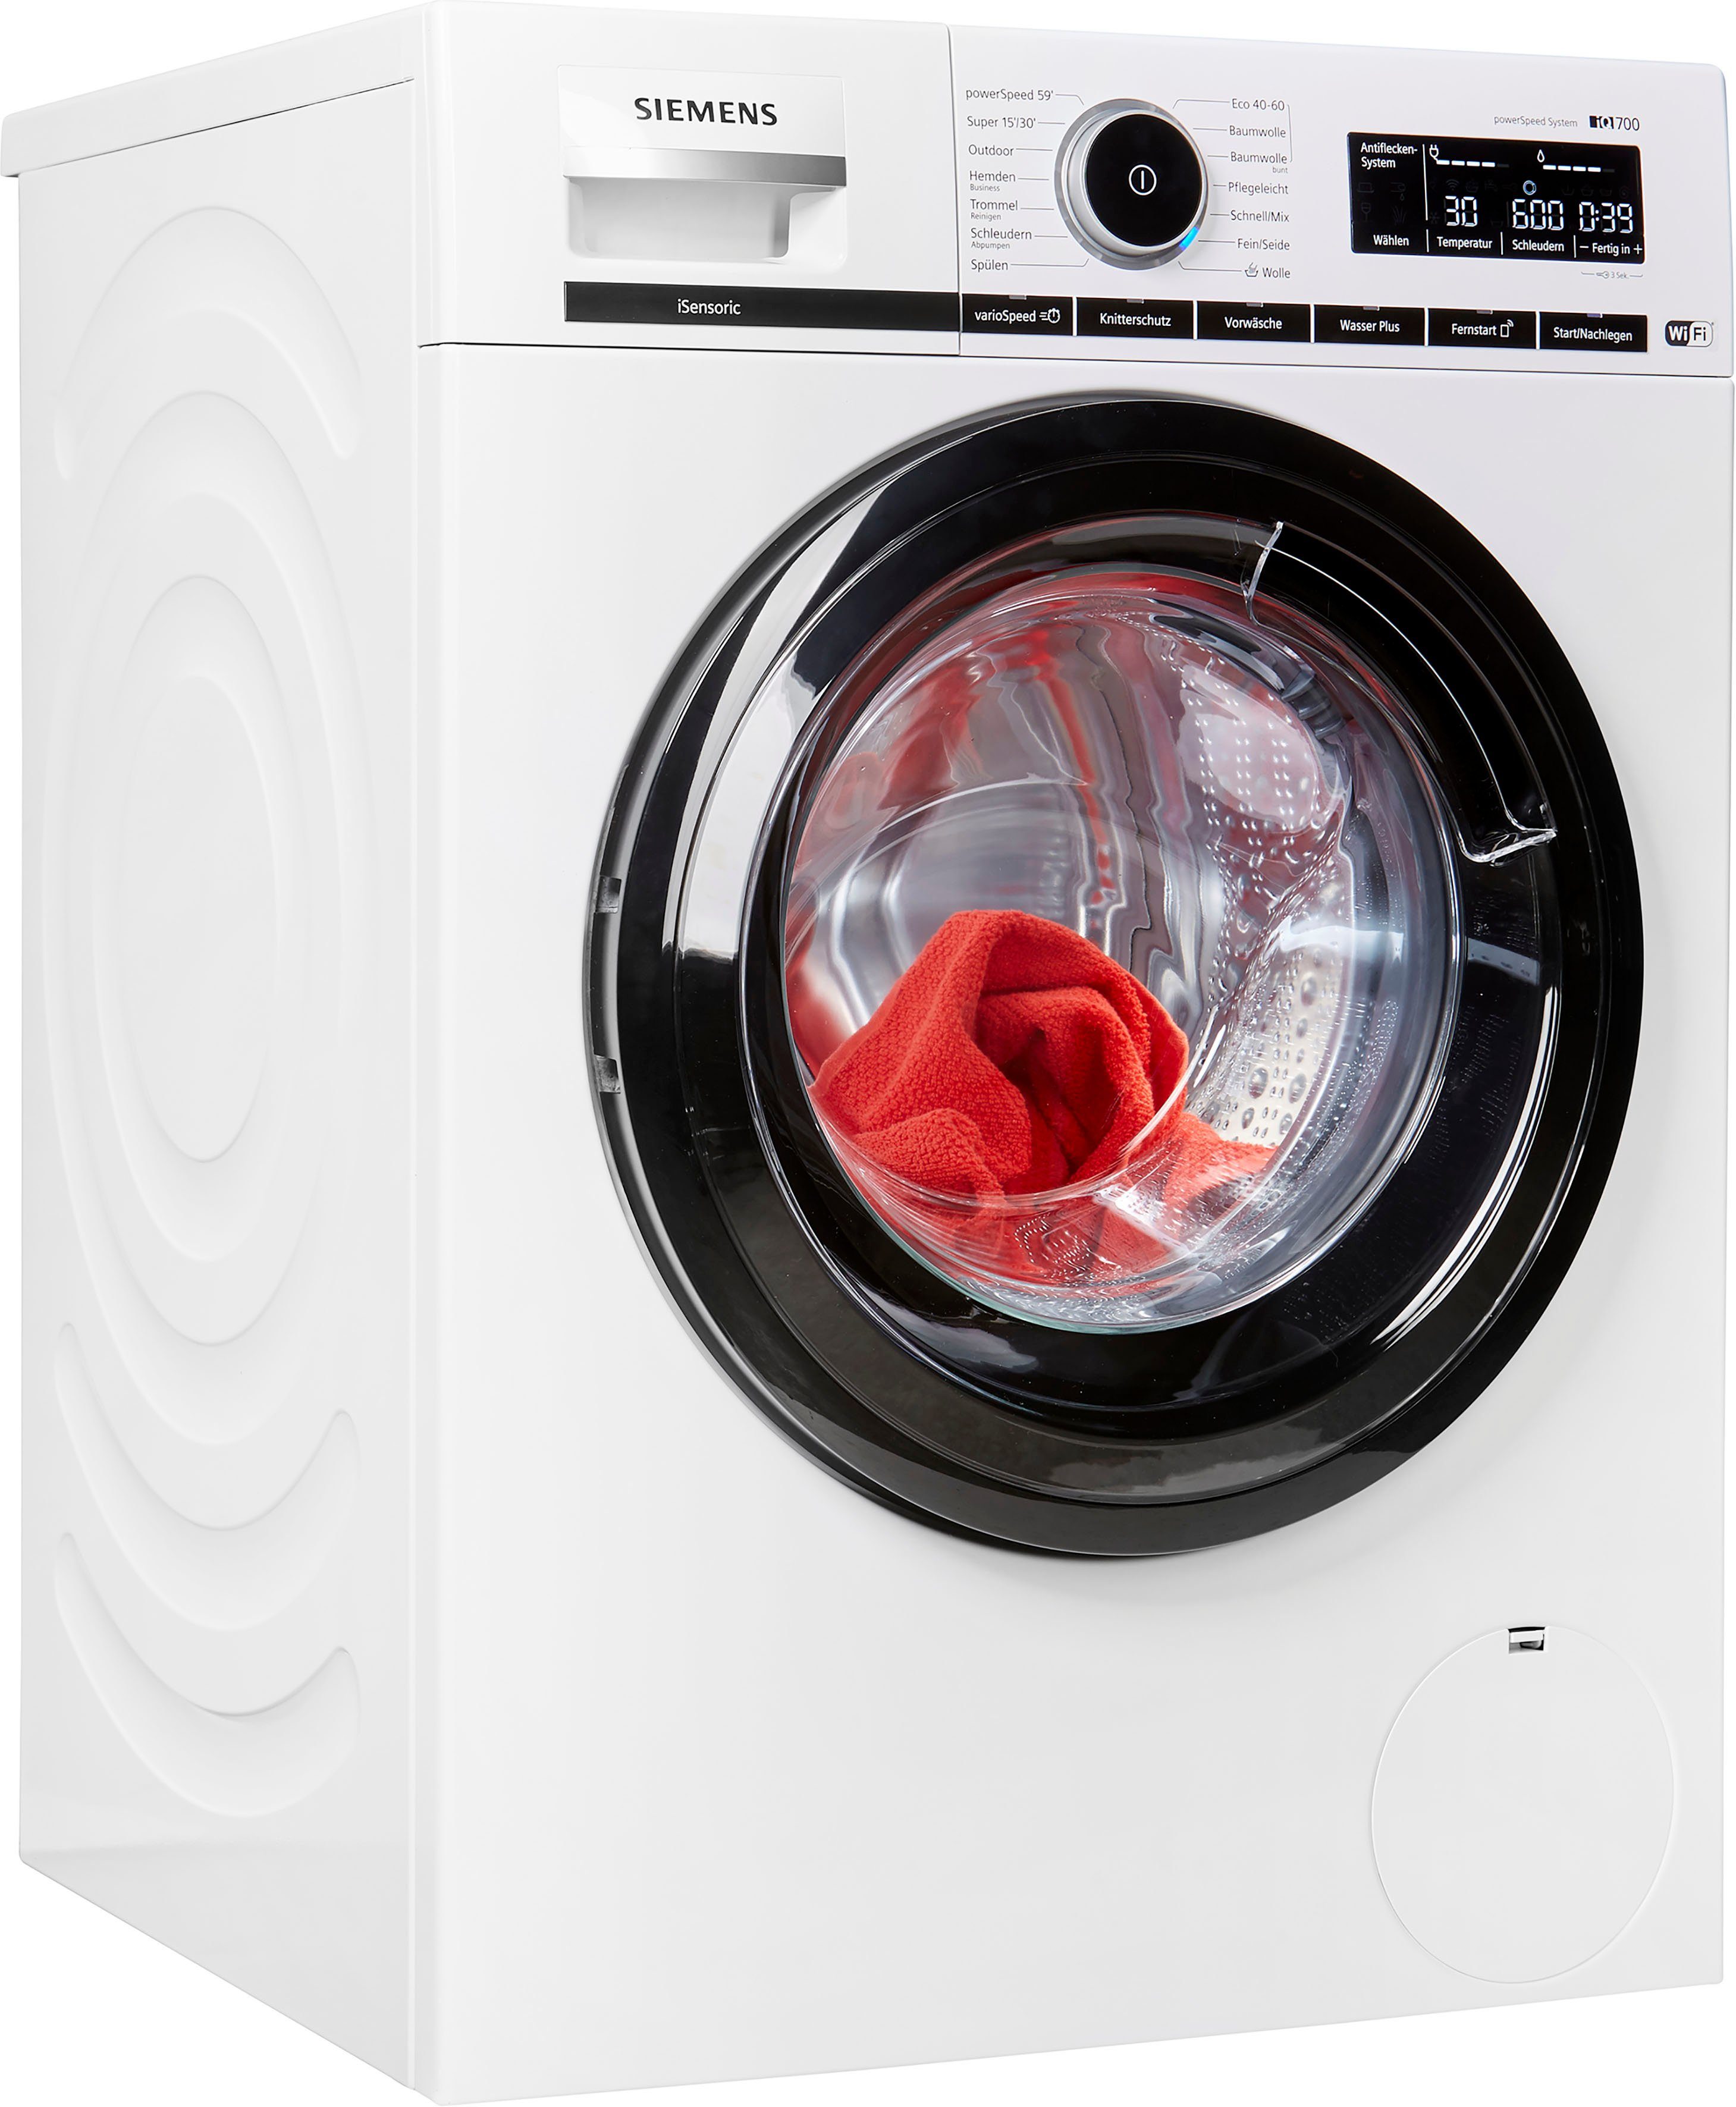 Siemens Waschmaschine Iq700 Bedienungsanleitung